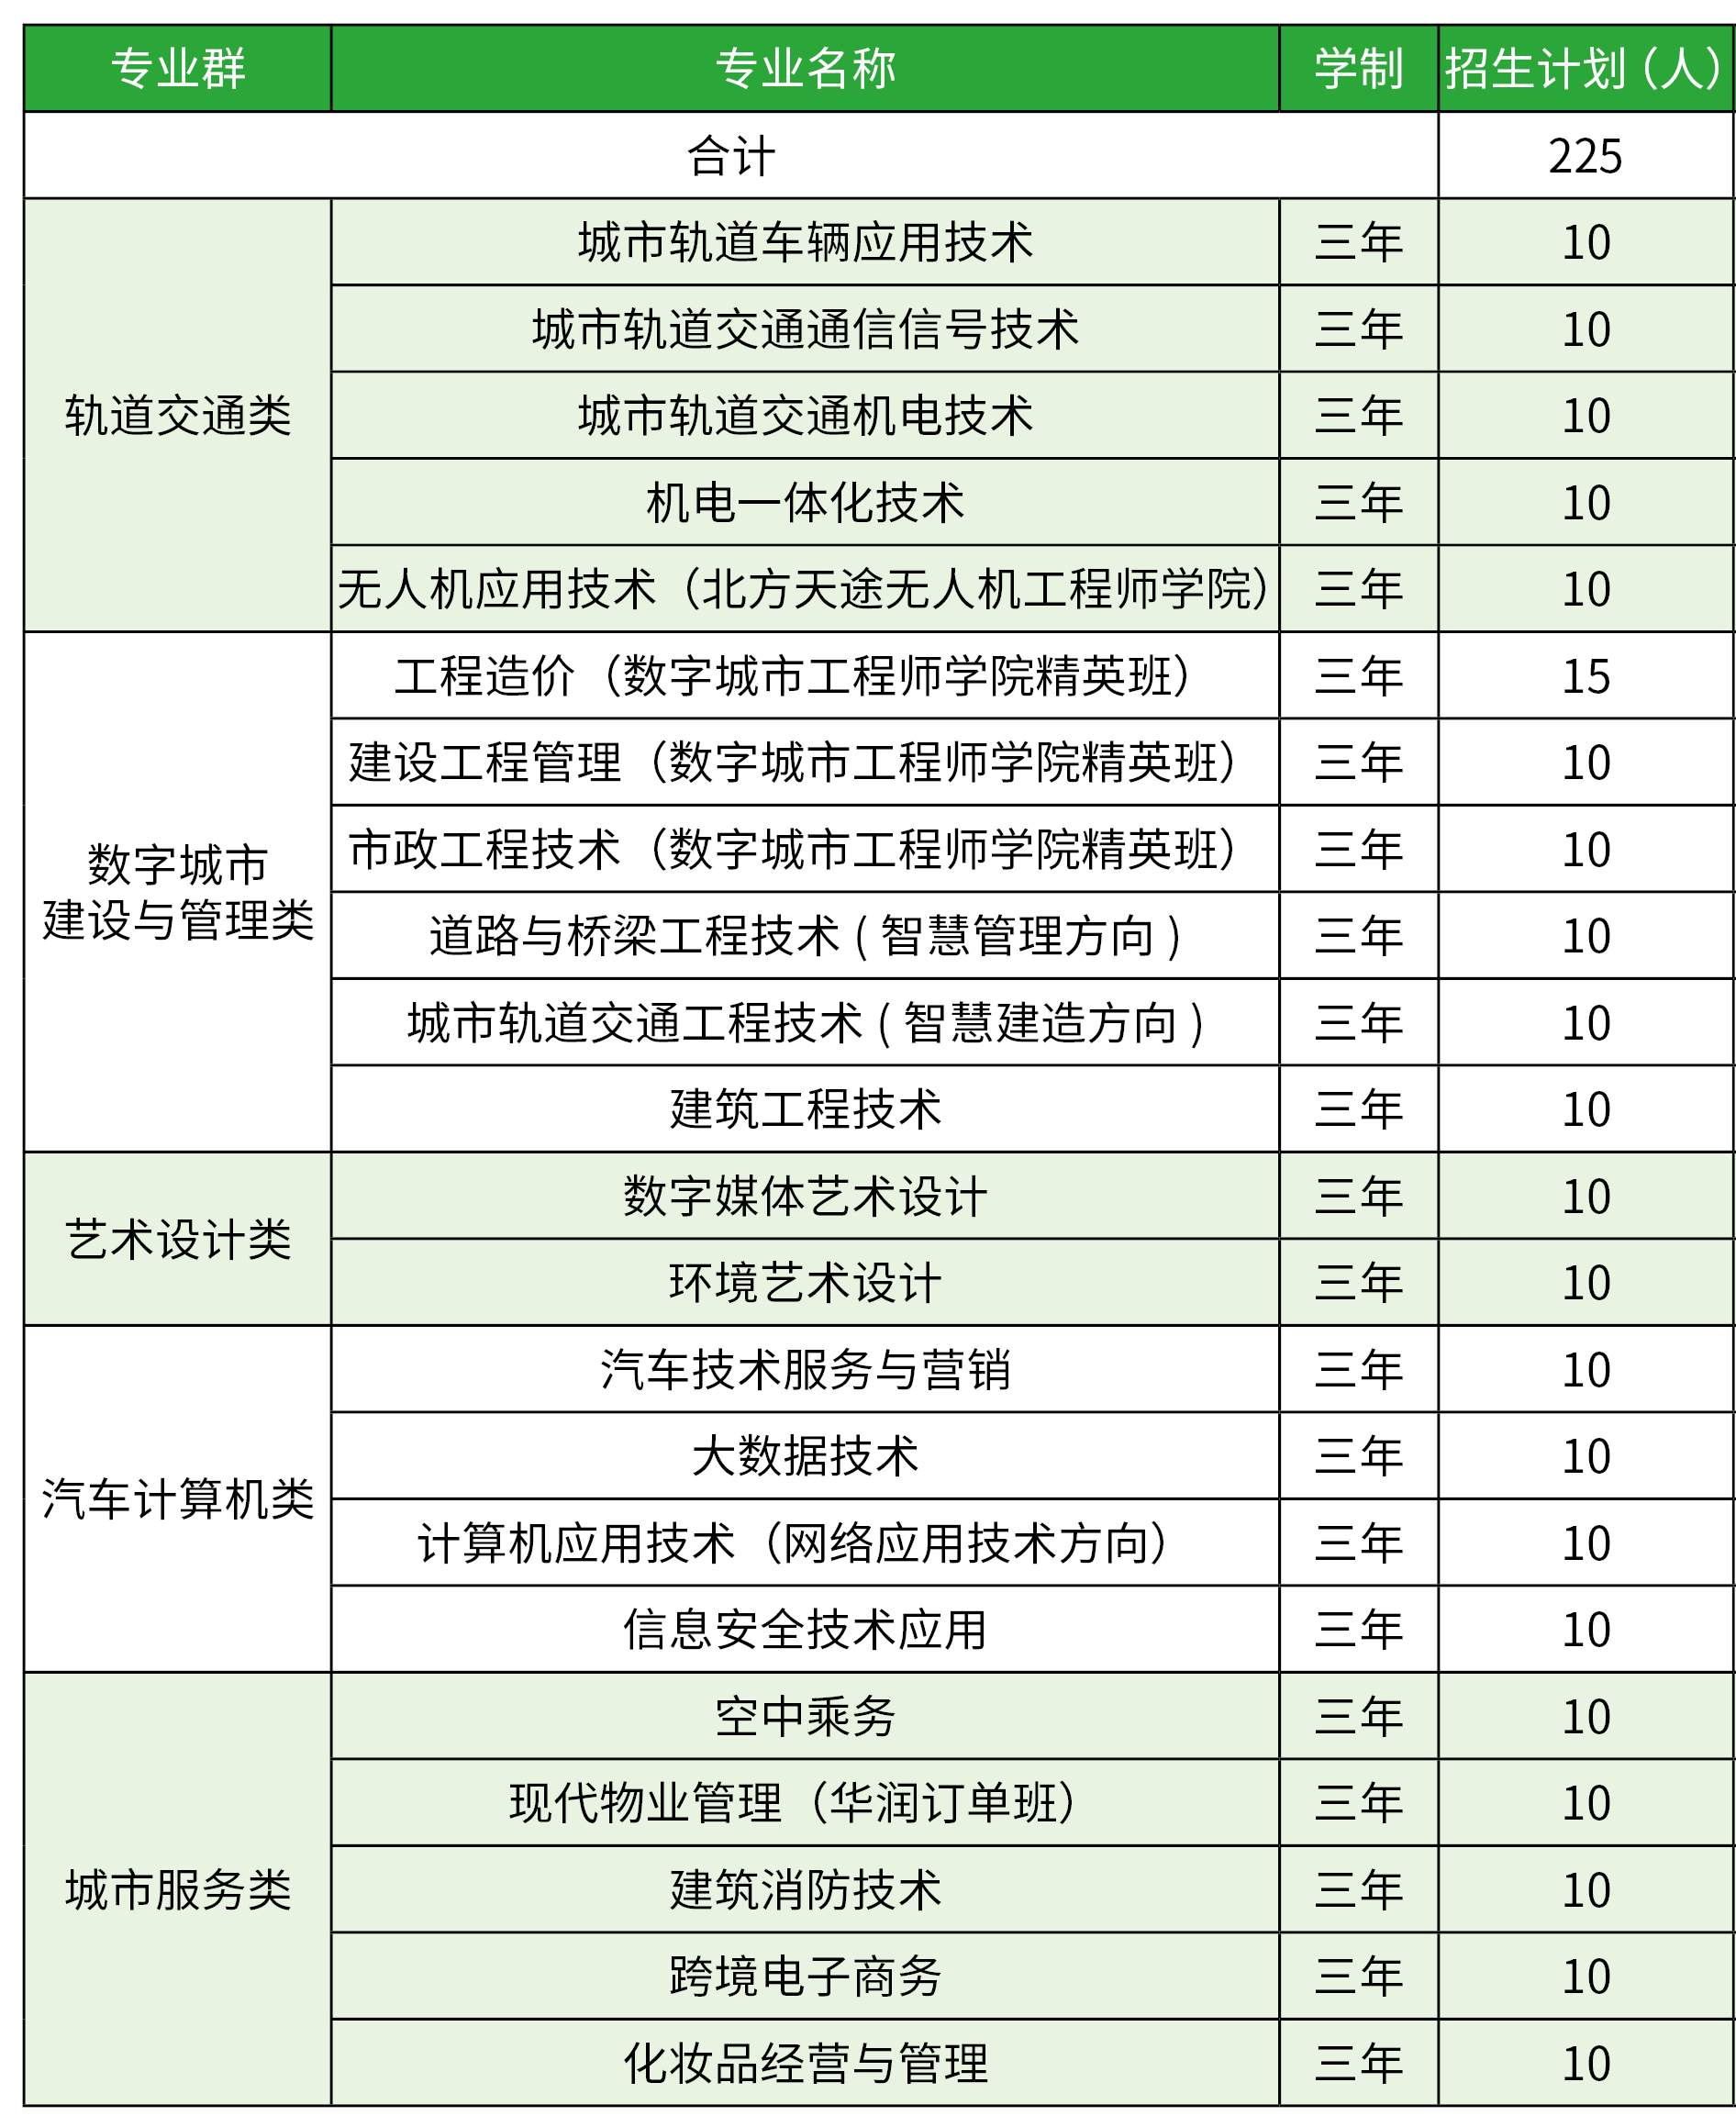 2022年北京交通职业技术学院高职自主招生章程